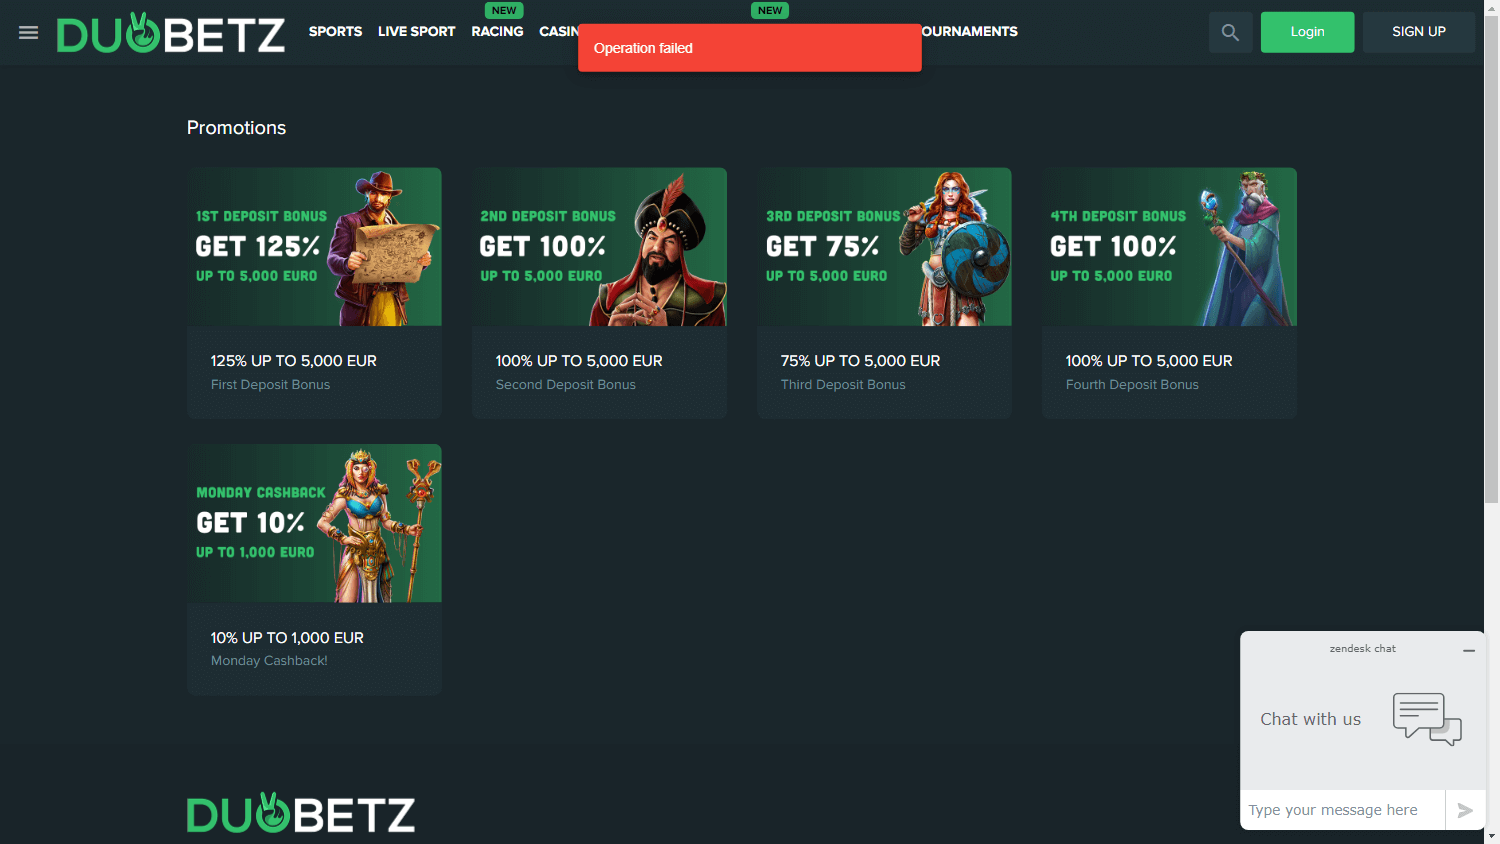 duobetz_casino_promotions_desktop